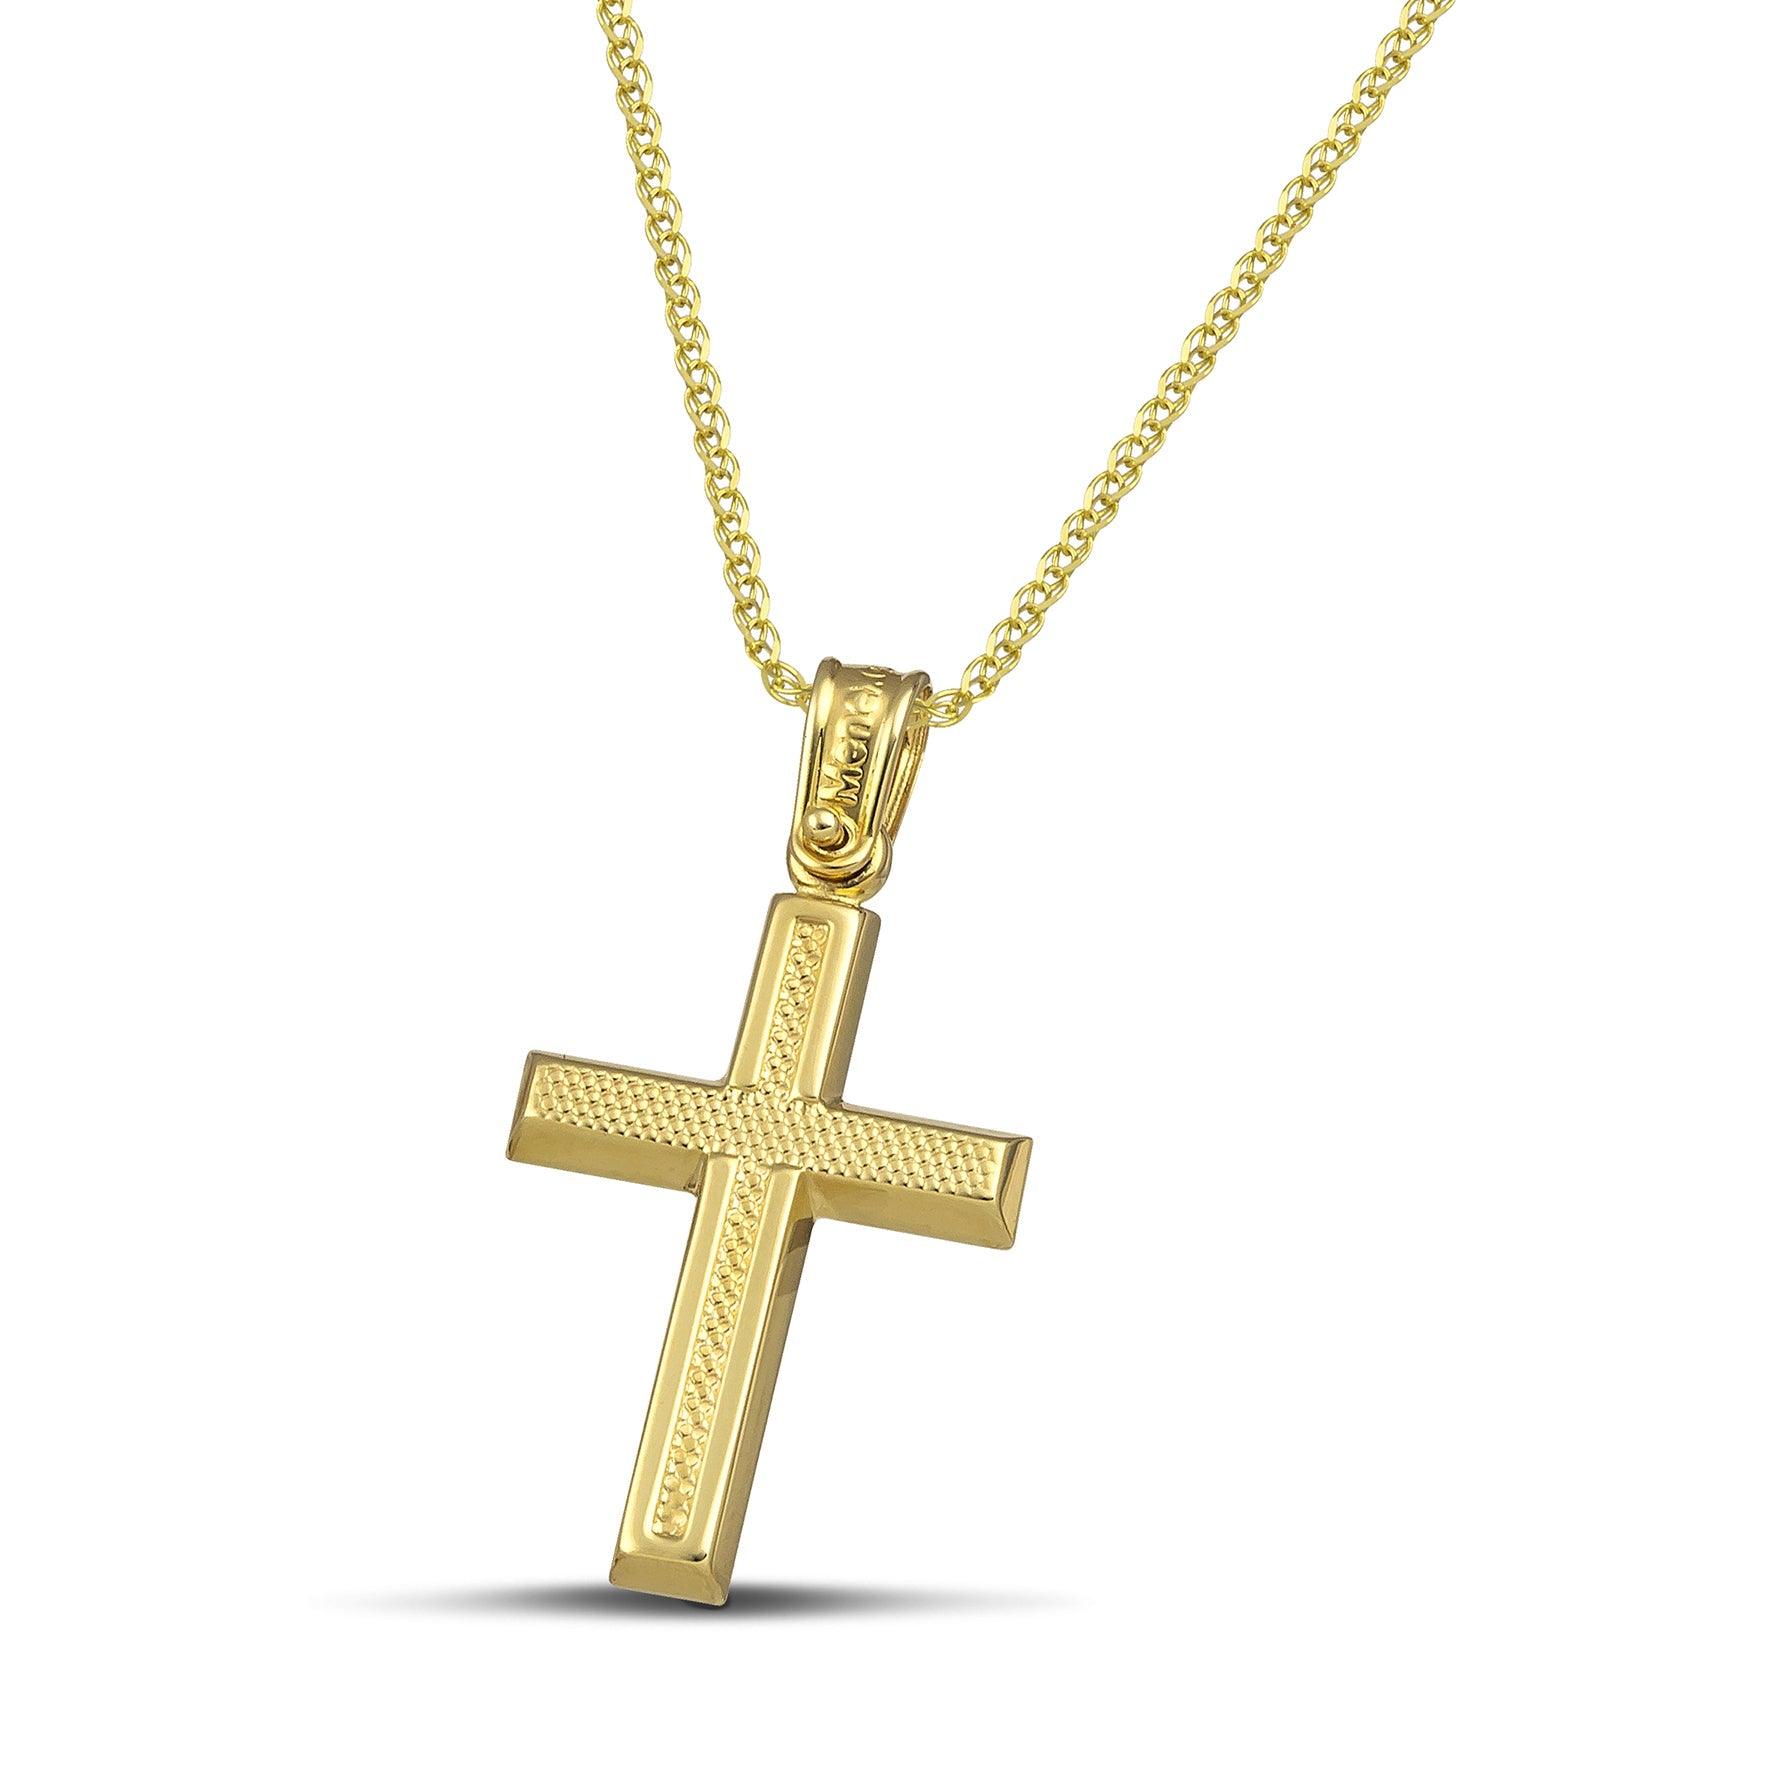 Μοντέρνος σταυρός για κορίτσι από χρυσό Κ14 ανάγλυφος. Φορεμένος σε πλεκτή αλυσίδα.